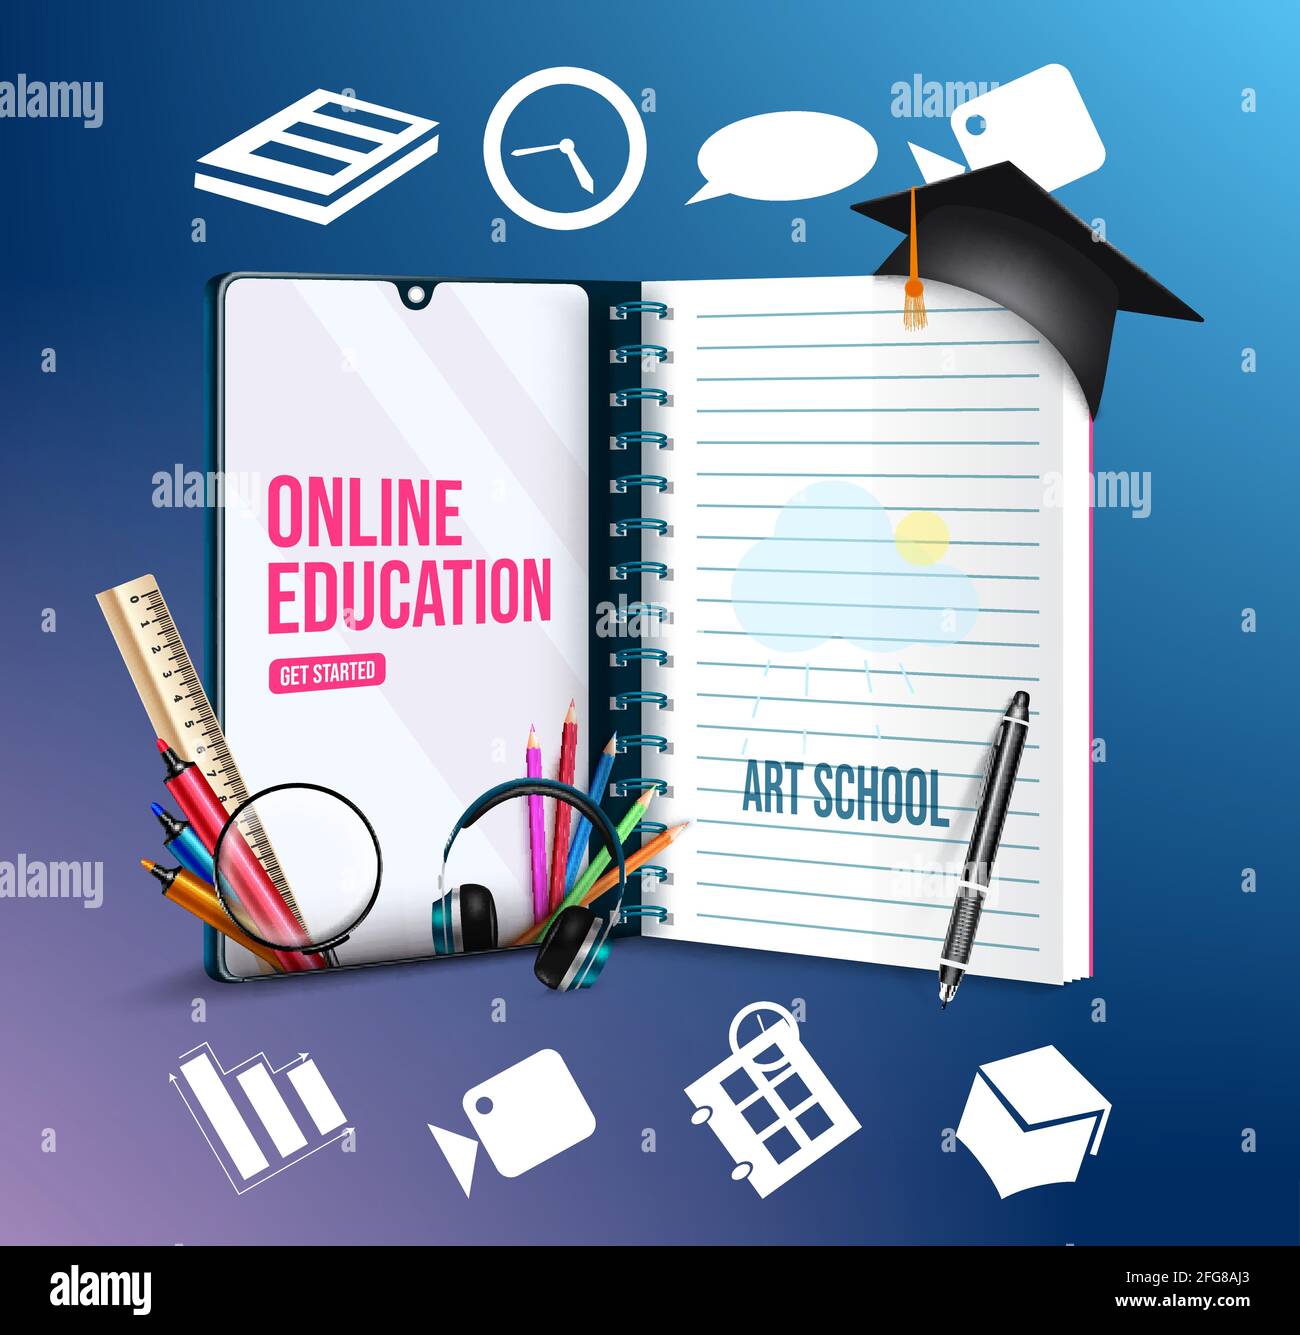 Online-Bildung Vektor Konzept-Design. Online-Bildung Art School Text in Handy mit Notebook und digitale Bildung Symbol für kreative. Stock Vektor